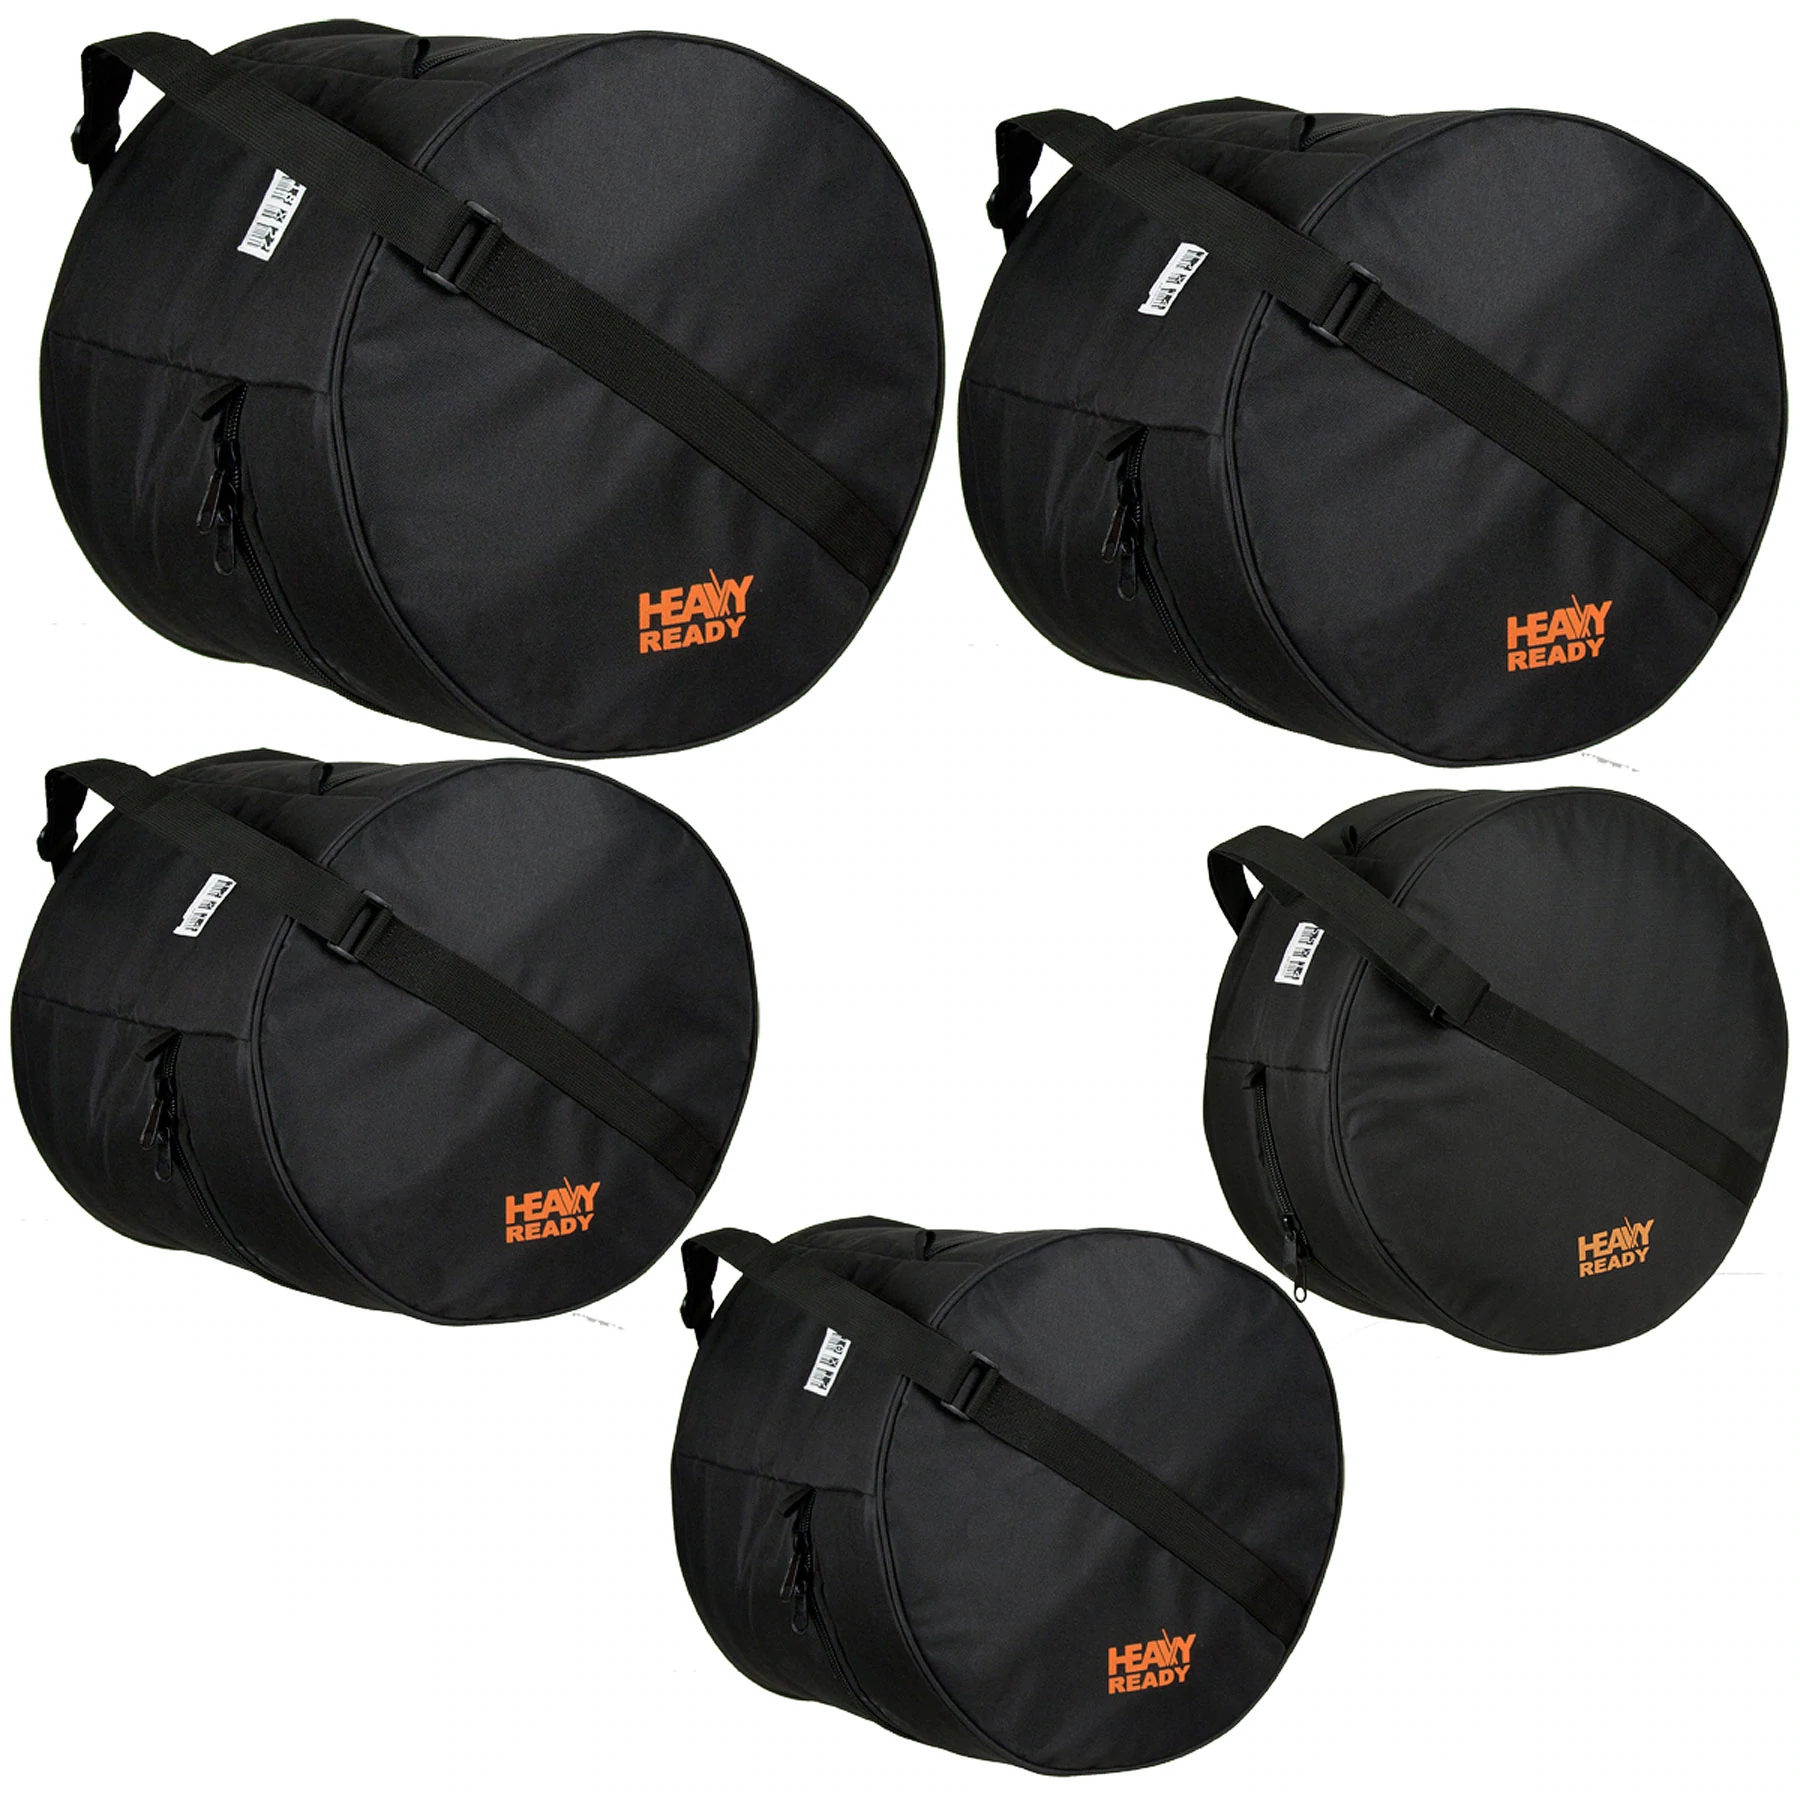 PROTEC Heavy Ready 5pc Bag Kit - Fusion 2